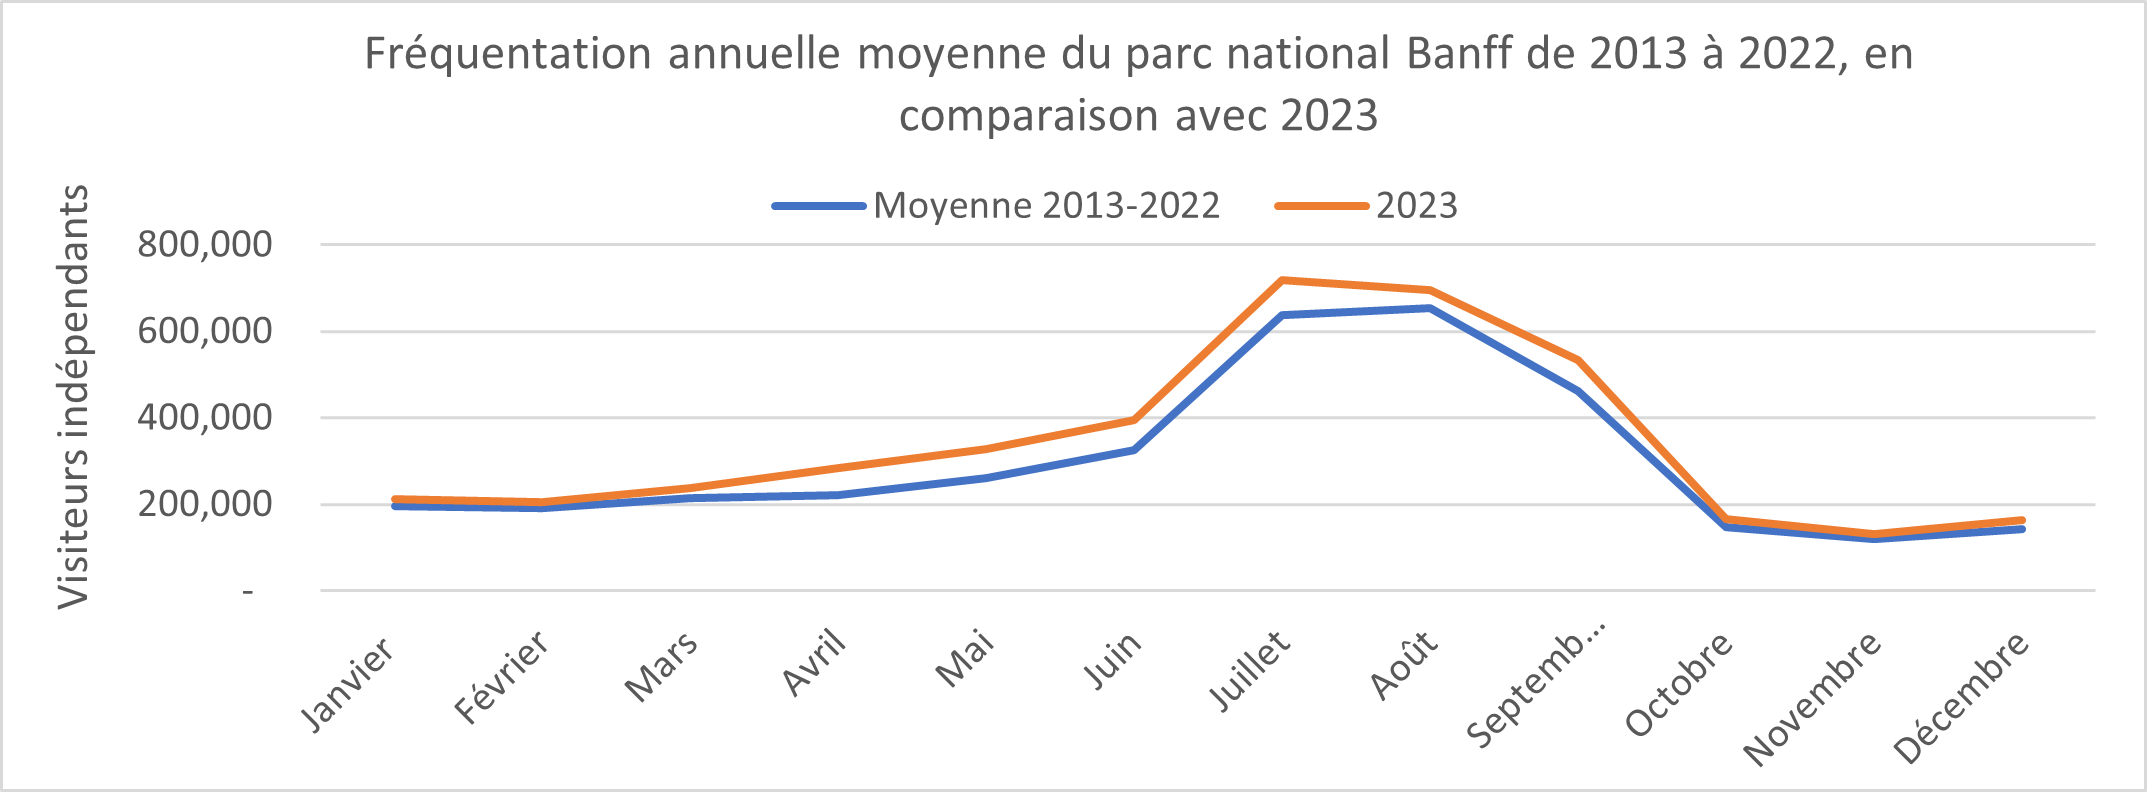 Graphique de la fréquentation mensuelle moyenne du parc national Banff, de 2013 à 2022 par rapport à 2023. Plus de détails dans la version texte ci-dessous.